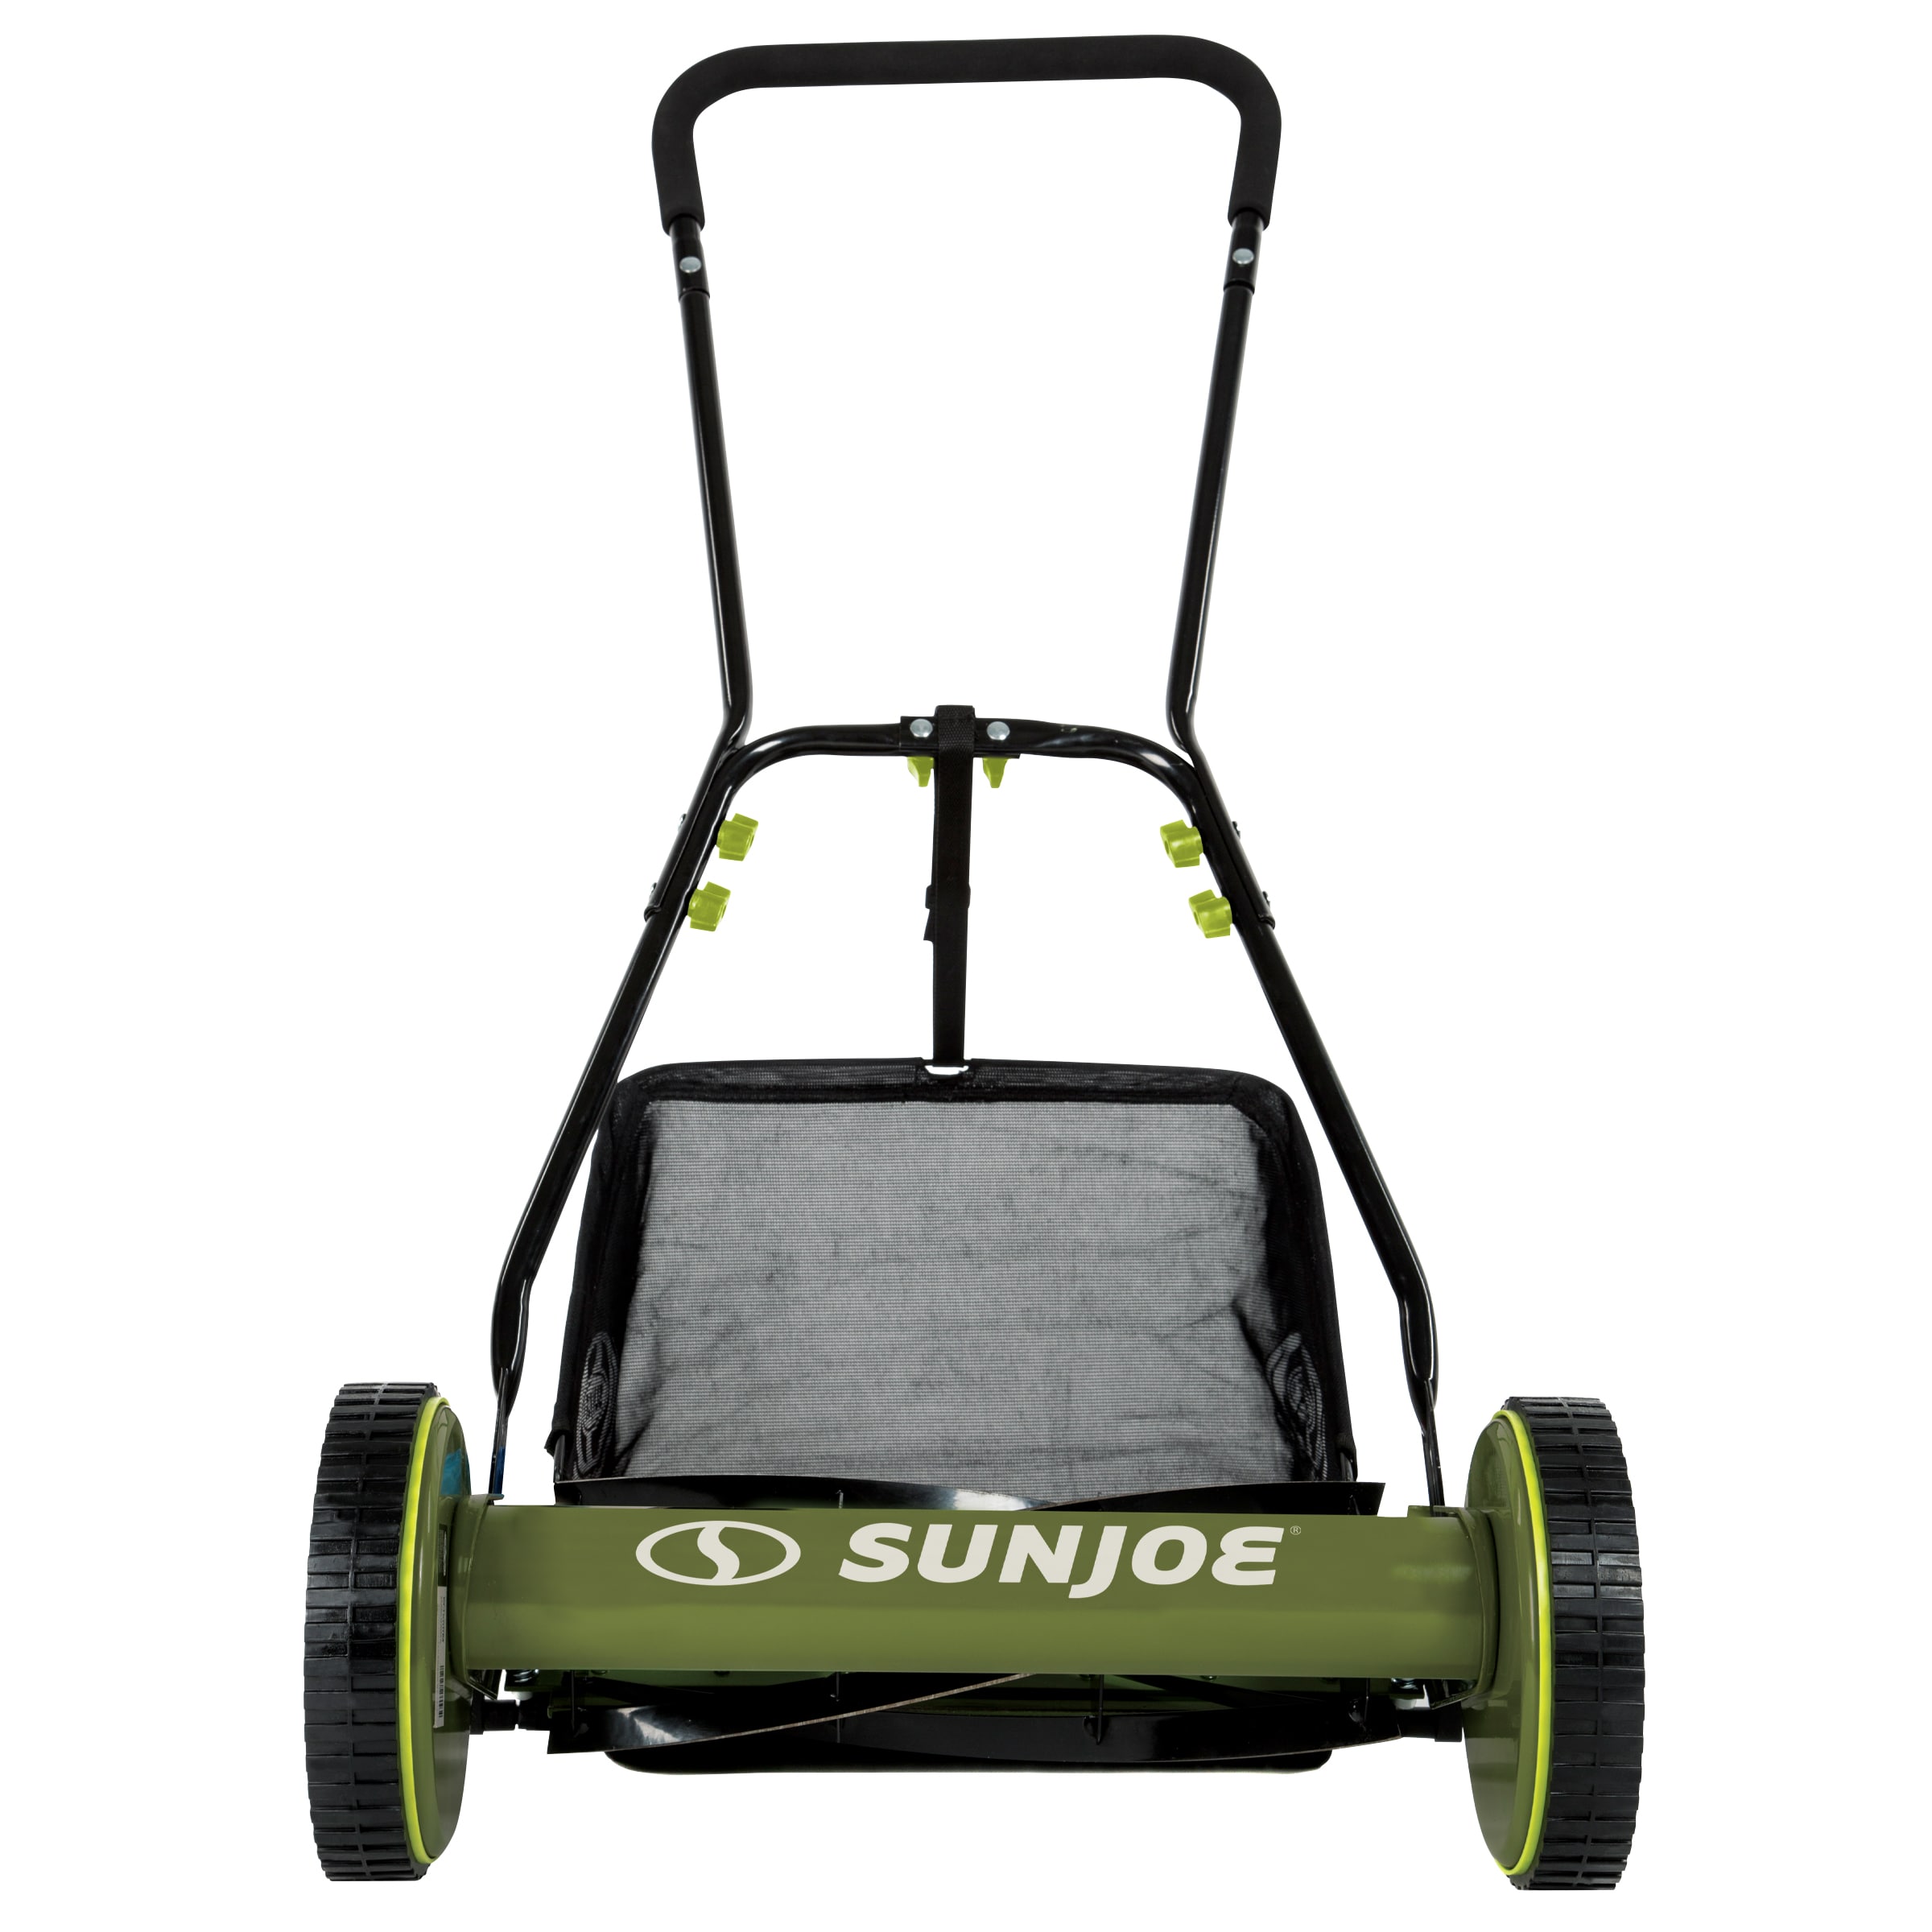 Sun Joe 16-in 4 Reel Lawn Mower with bagger in the Reel Lawn